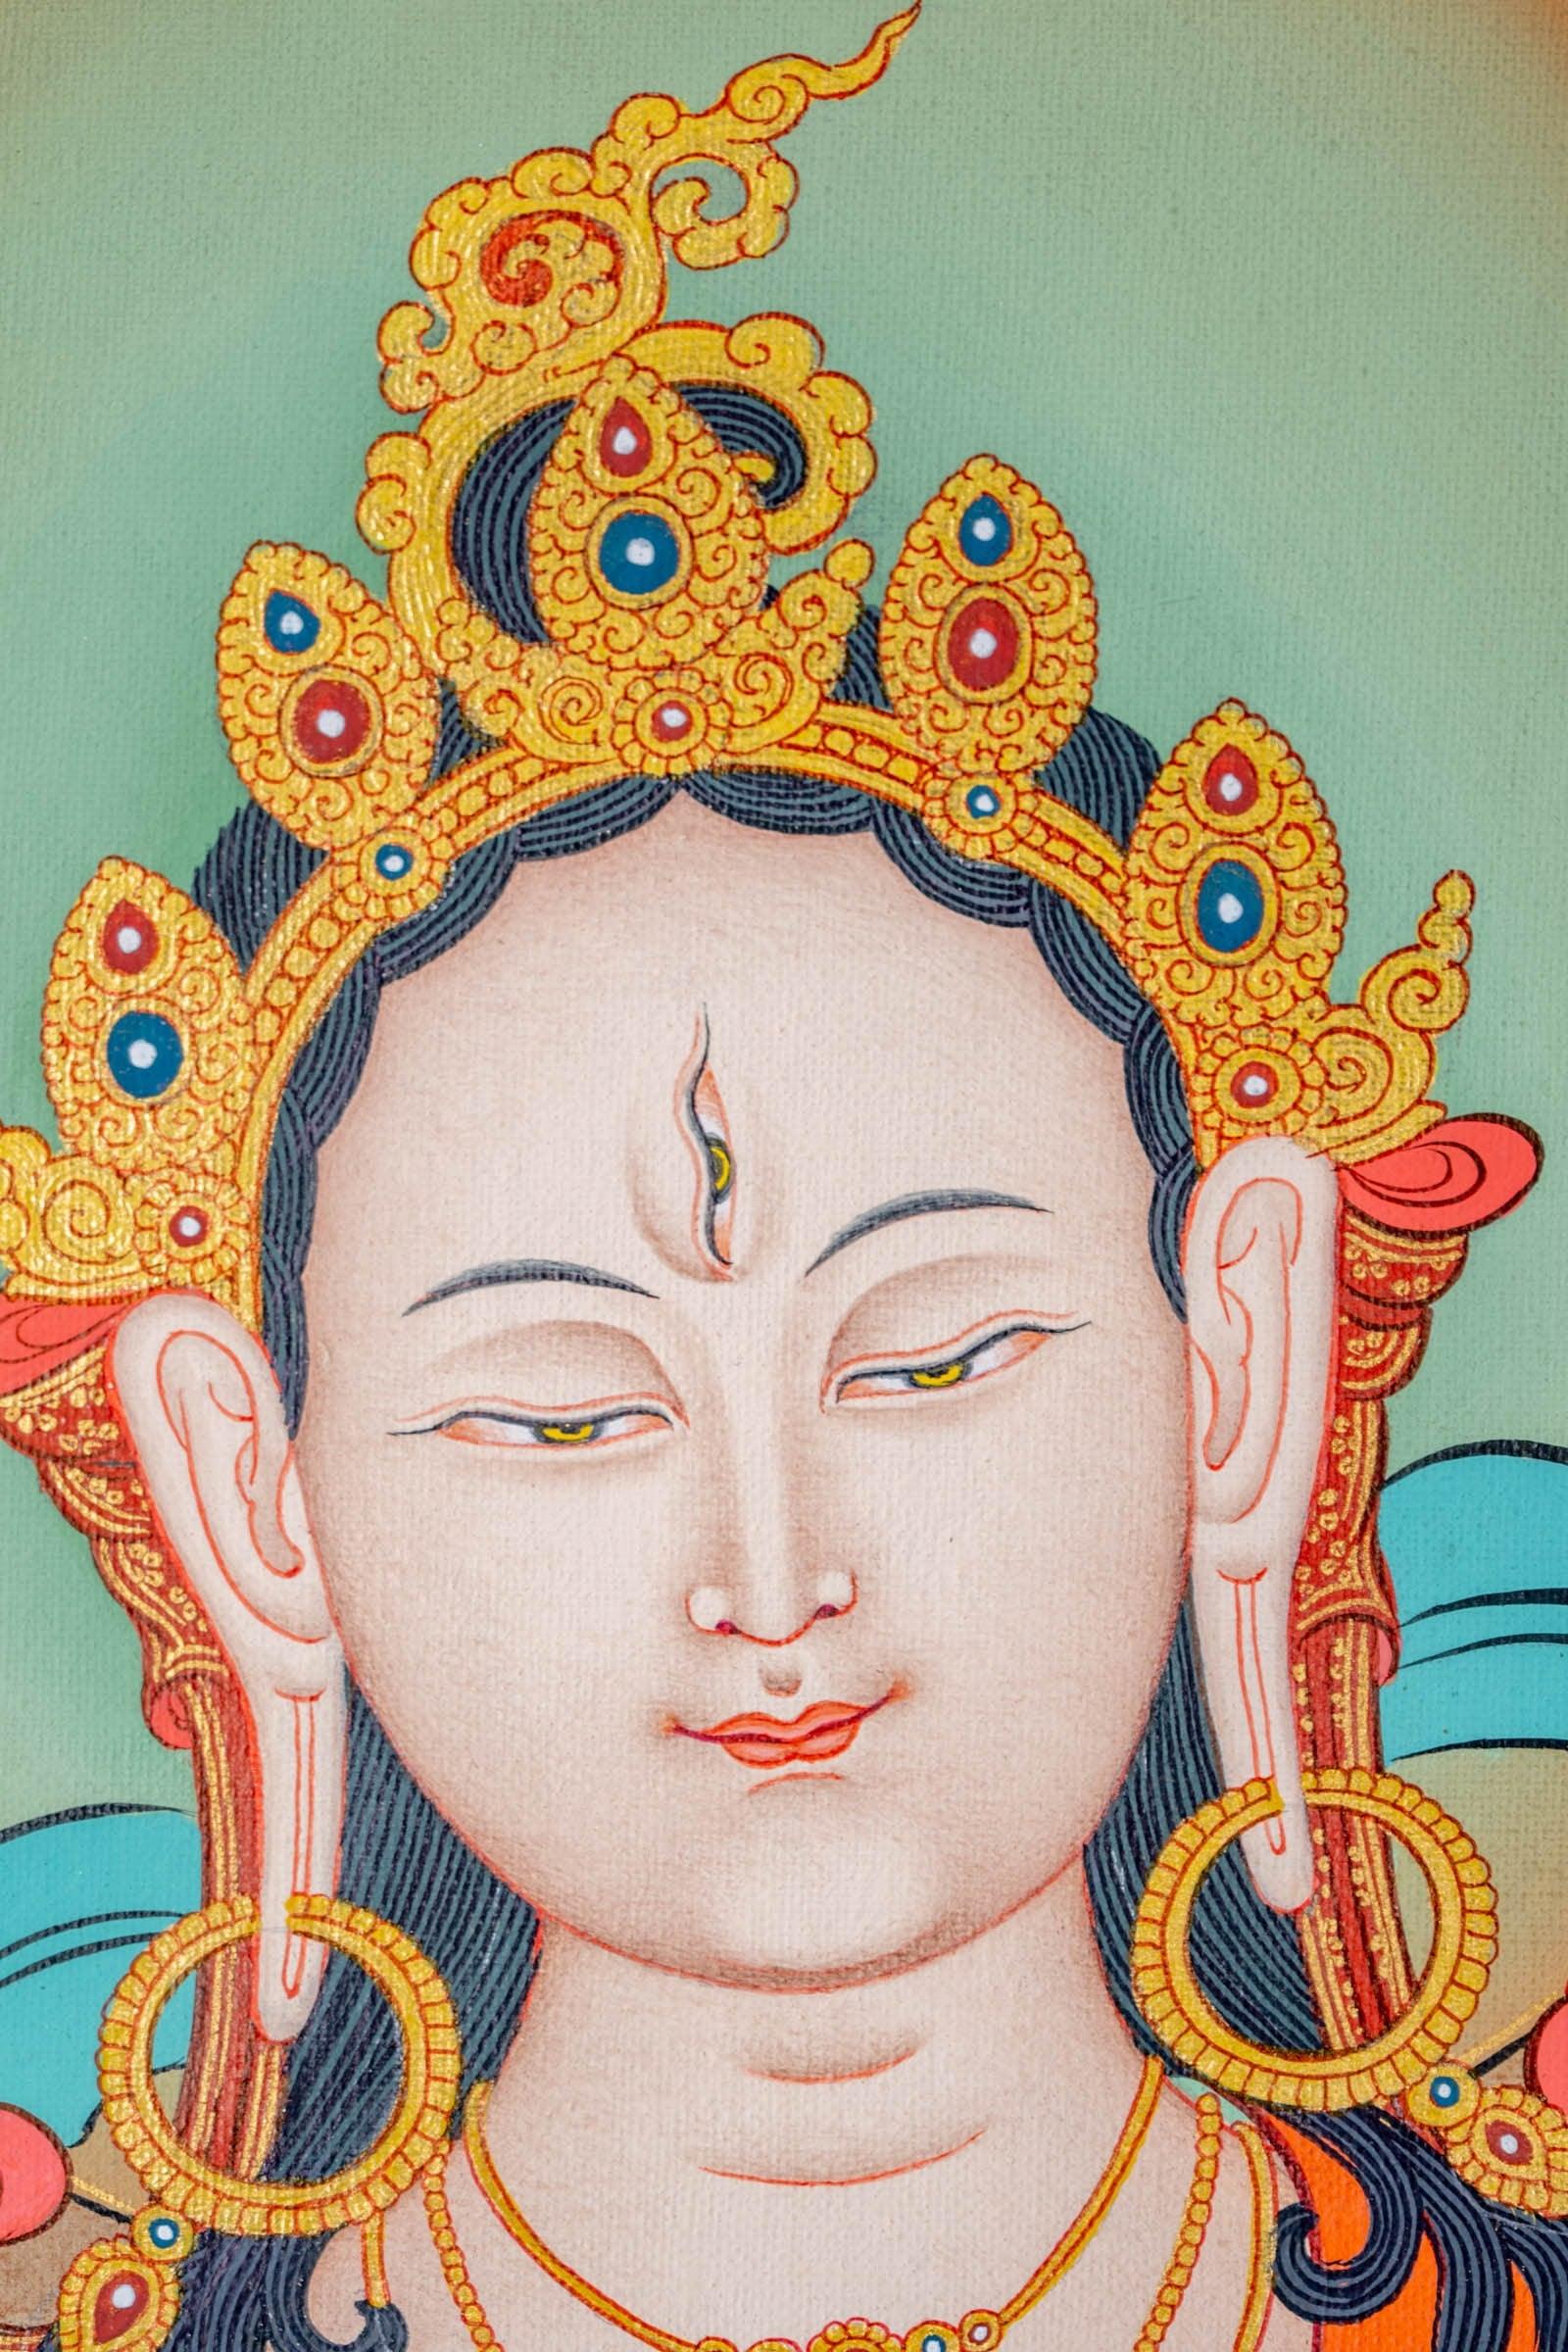 White Tara Thangka Painting - Himalayas Shop